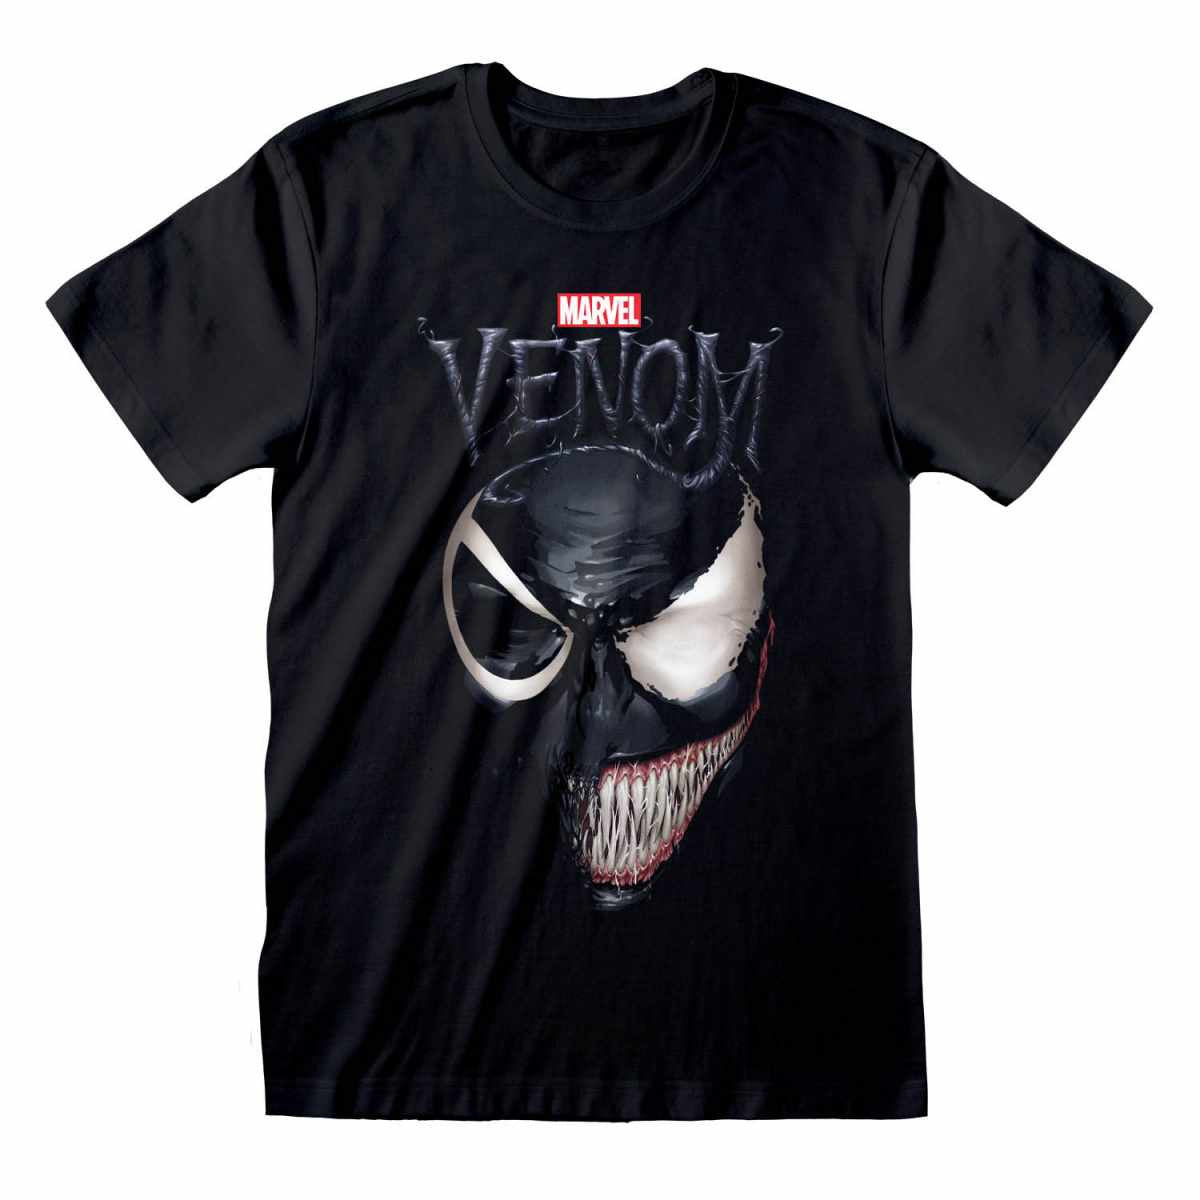 MARVEL - Venom Split Face T-Shirt